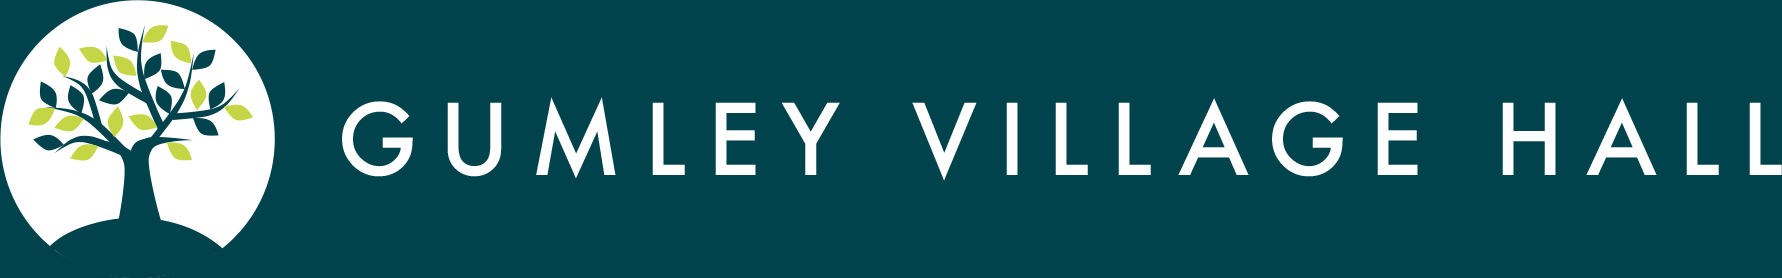 Gumley Village Hall logo